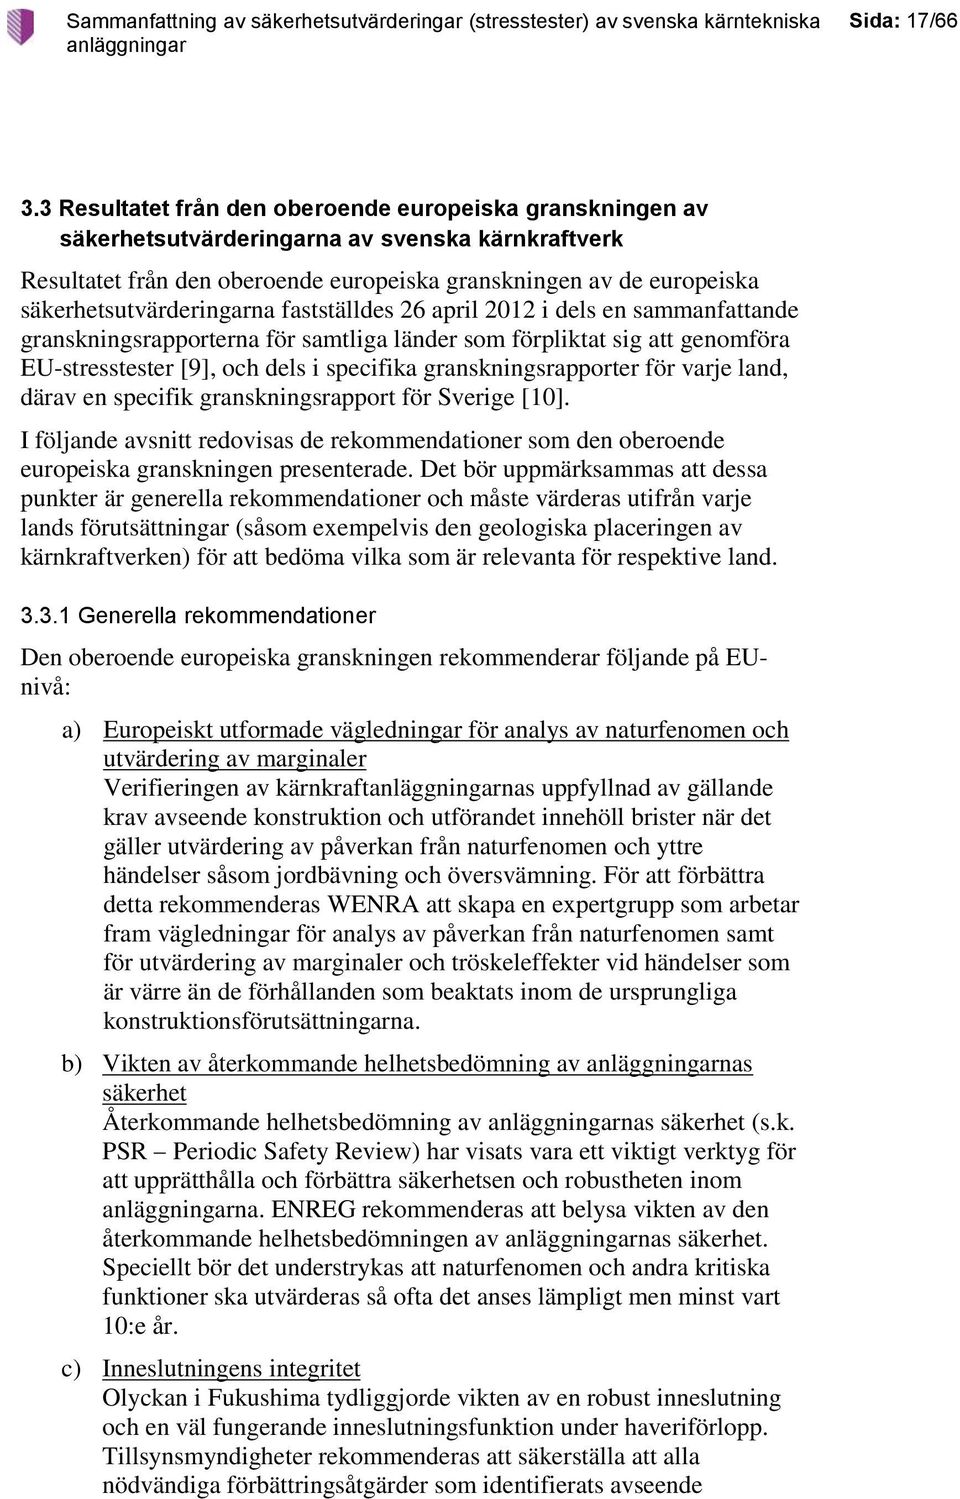 säkerhetsutvärderingarna fastställdes 26 april 2012 i dels en sammanfattande granskningsrapporterna för samtliga länder som förpliktat sig att genomföra EU-stresstester [9], och dels i specifika